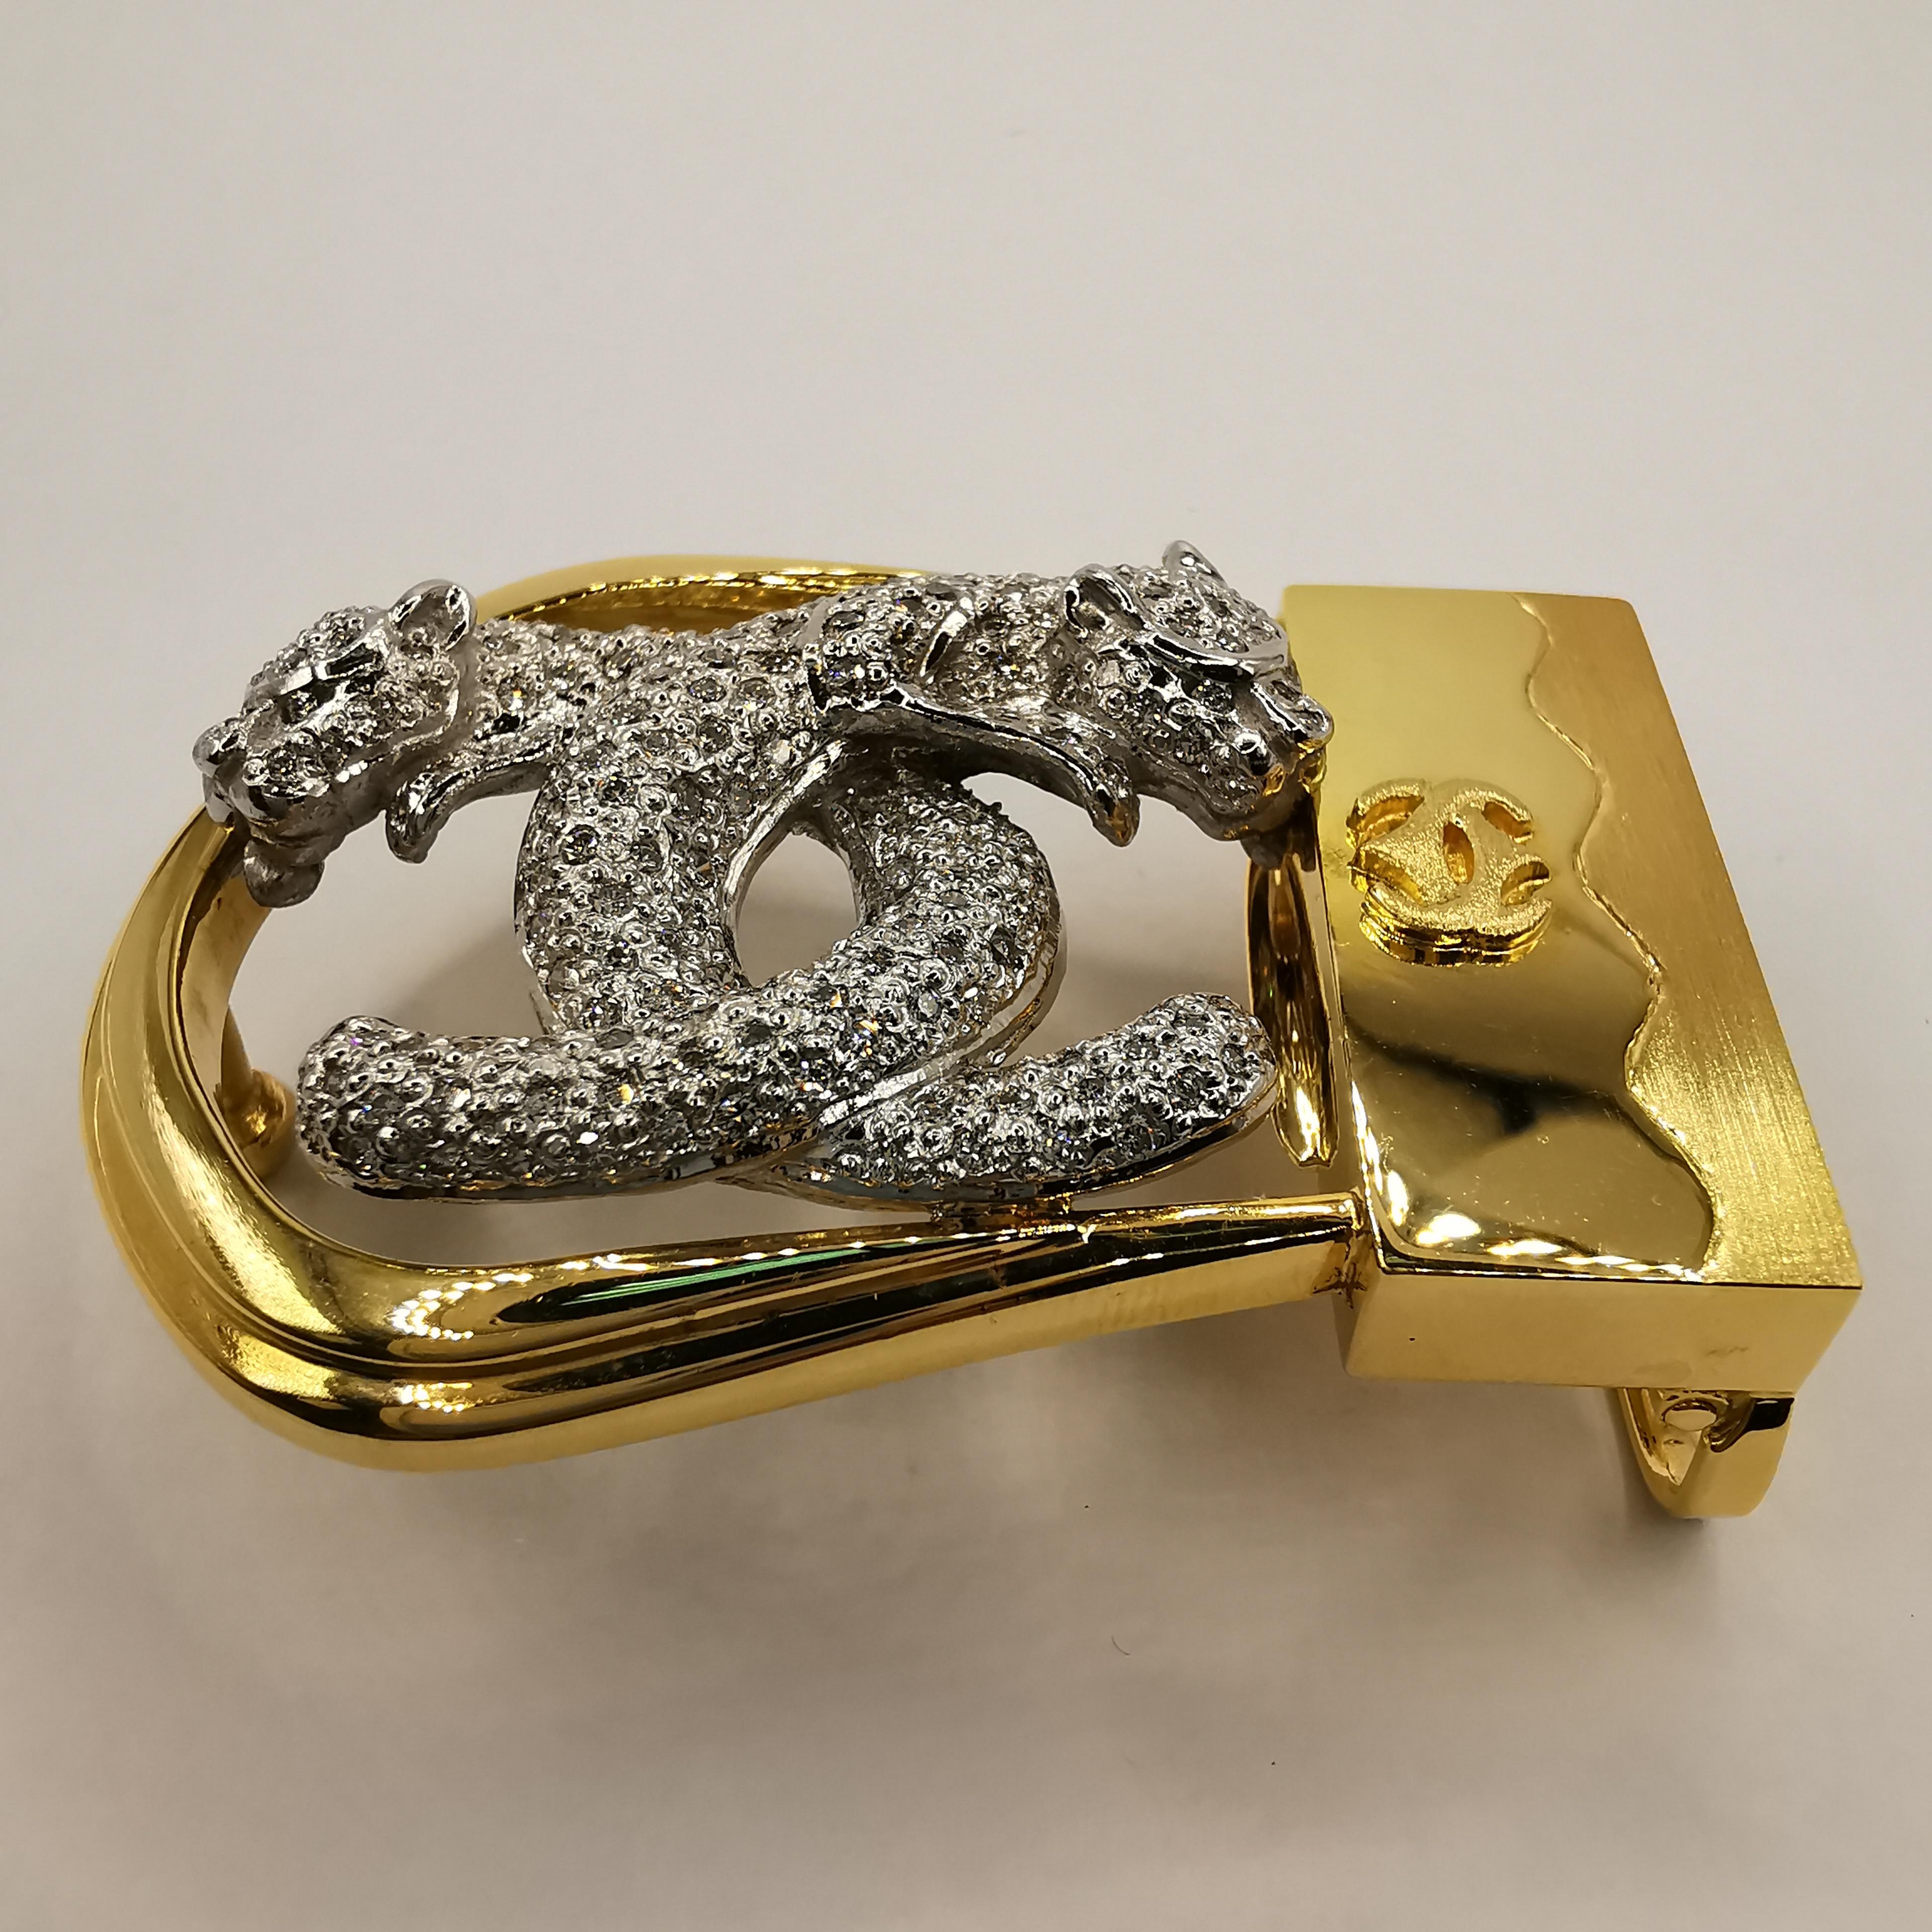 Verleihen Sie Ihrem Stil einen Hauch von Luxus und Glamour mit dieser 3 cm langen Double Jaguar Gürtelschnalle mit 1,74 Karat Diamanten aus 18 K Gelb- und Weißgold. Diese sorgfältig aus hochwertigem 18-karätigem Gelb- und Weißgold gefertigte